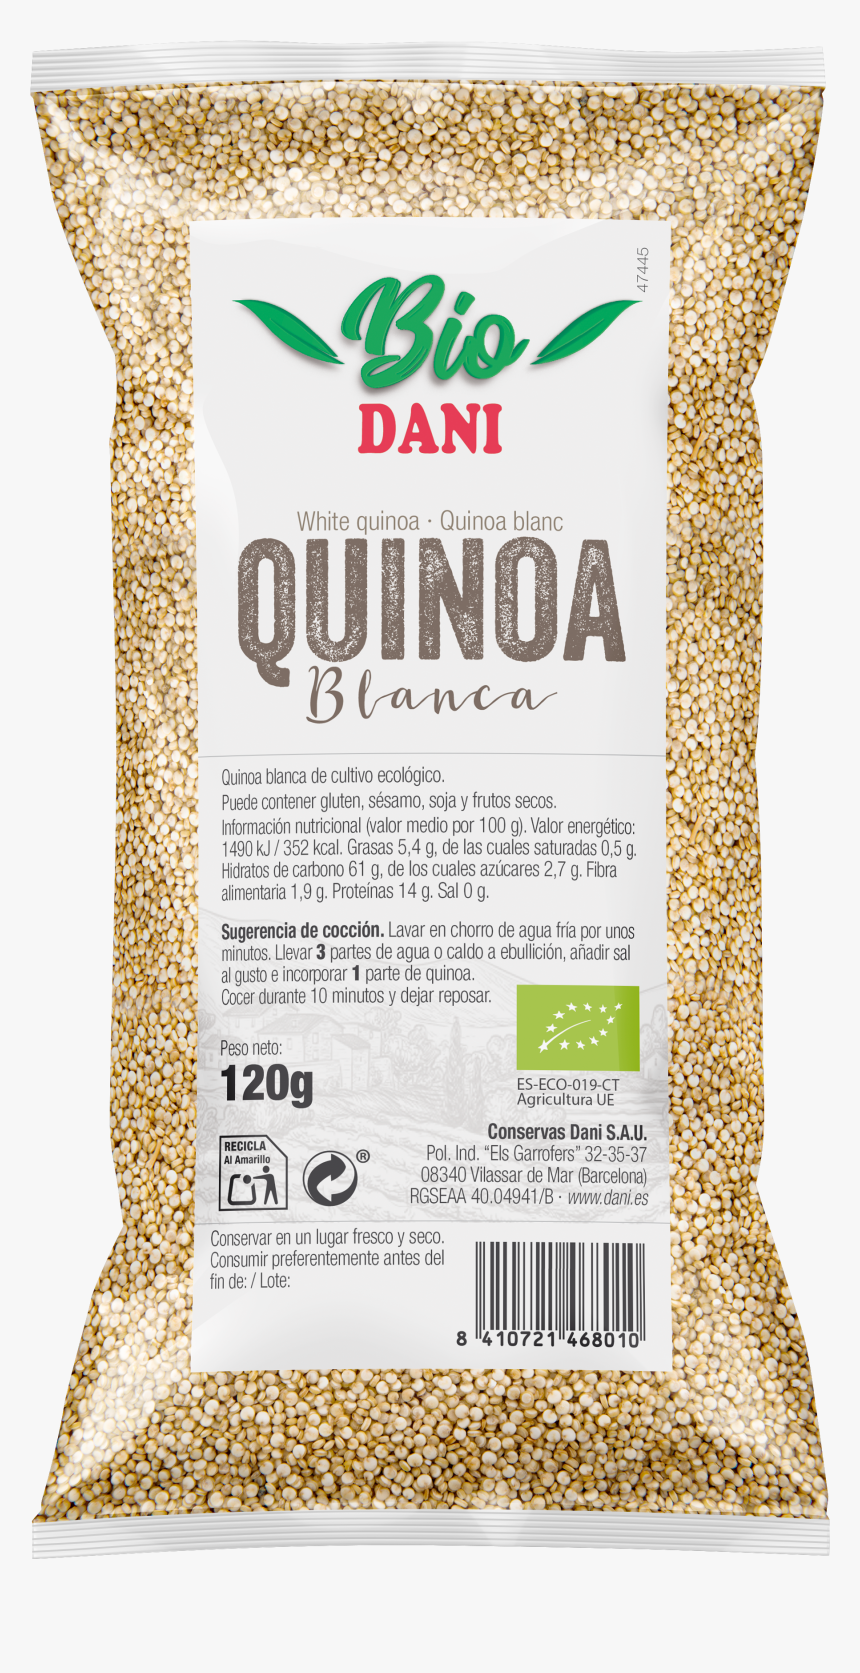 Transparent Quinoa Png - Basmati, Png Download, Free Download